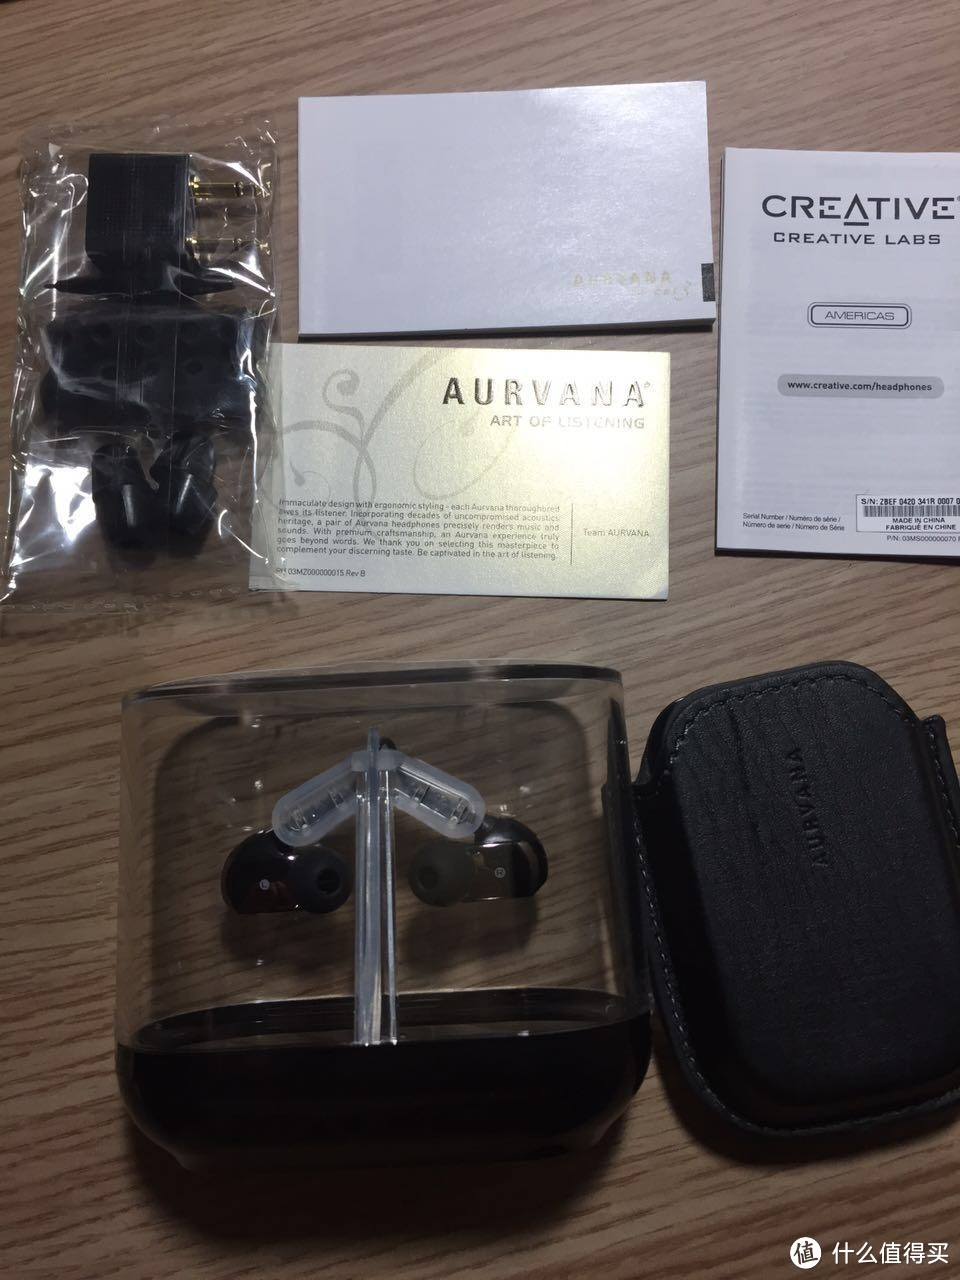 一大波电子商品来报到：Creative 创新 Aurvana 3 耳机、TDK A12 TREK 蓝牙音箱等等